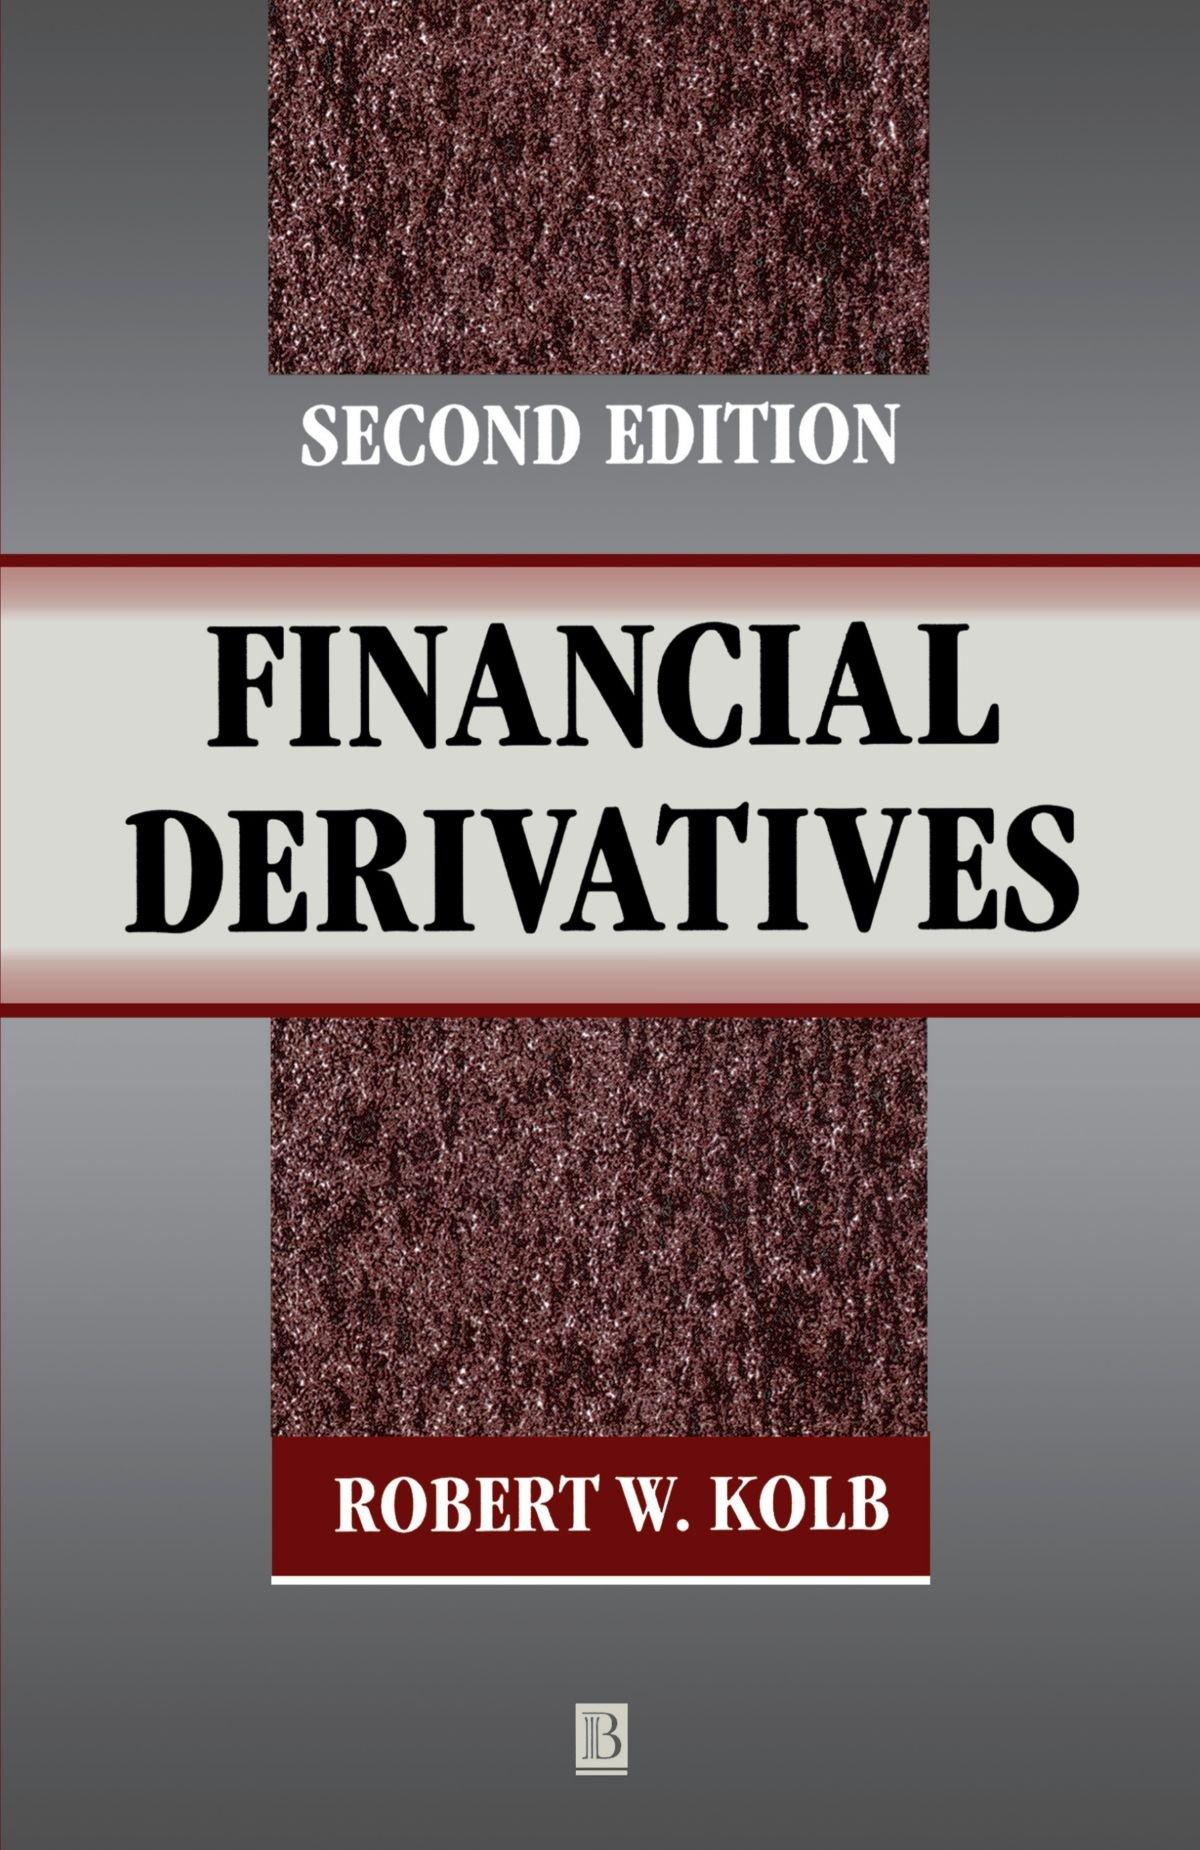 financial derivatives 2nd edition robert w. kolb 1557869308, 978-1557869302